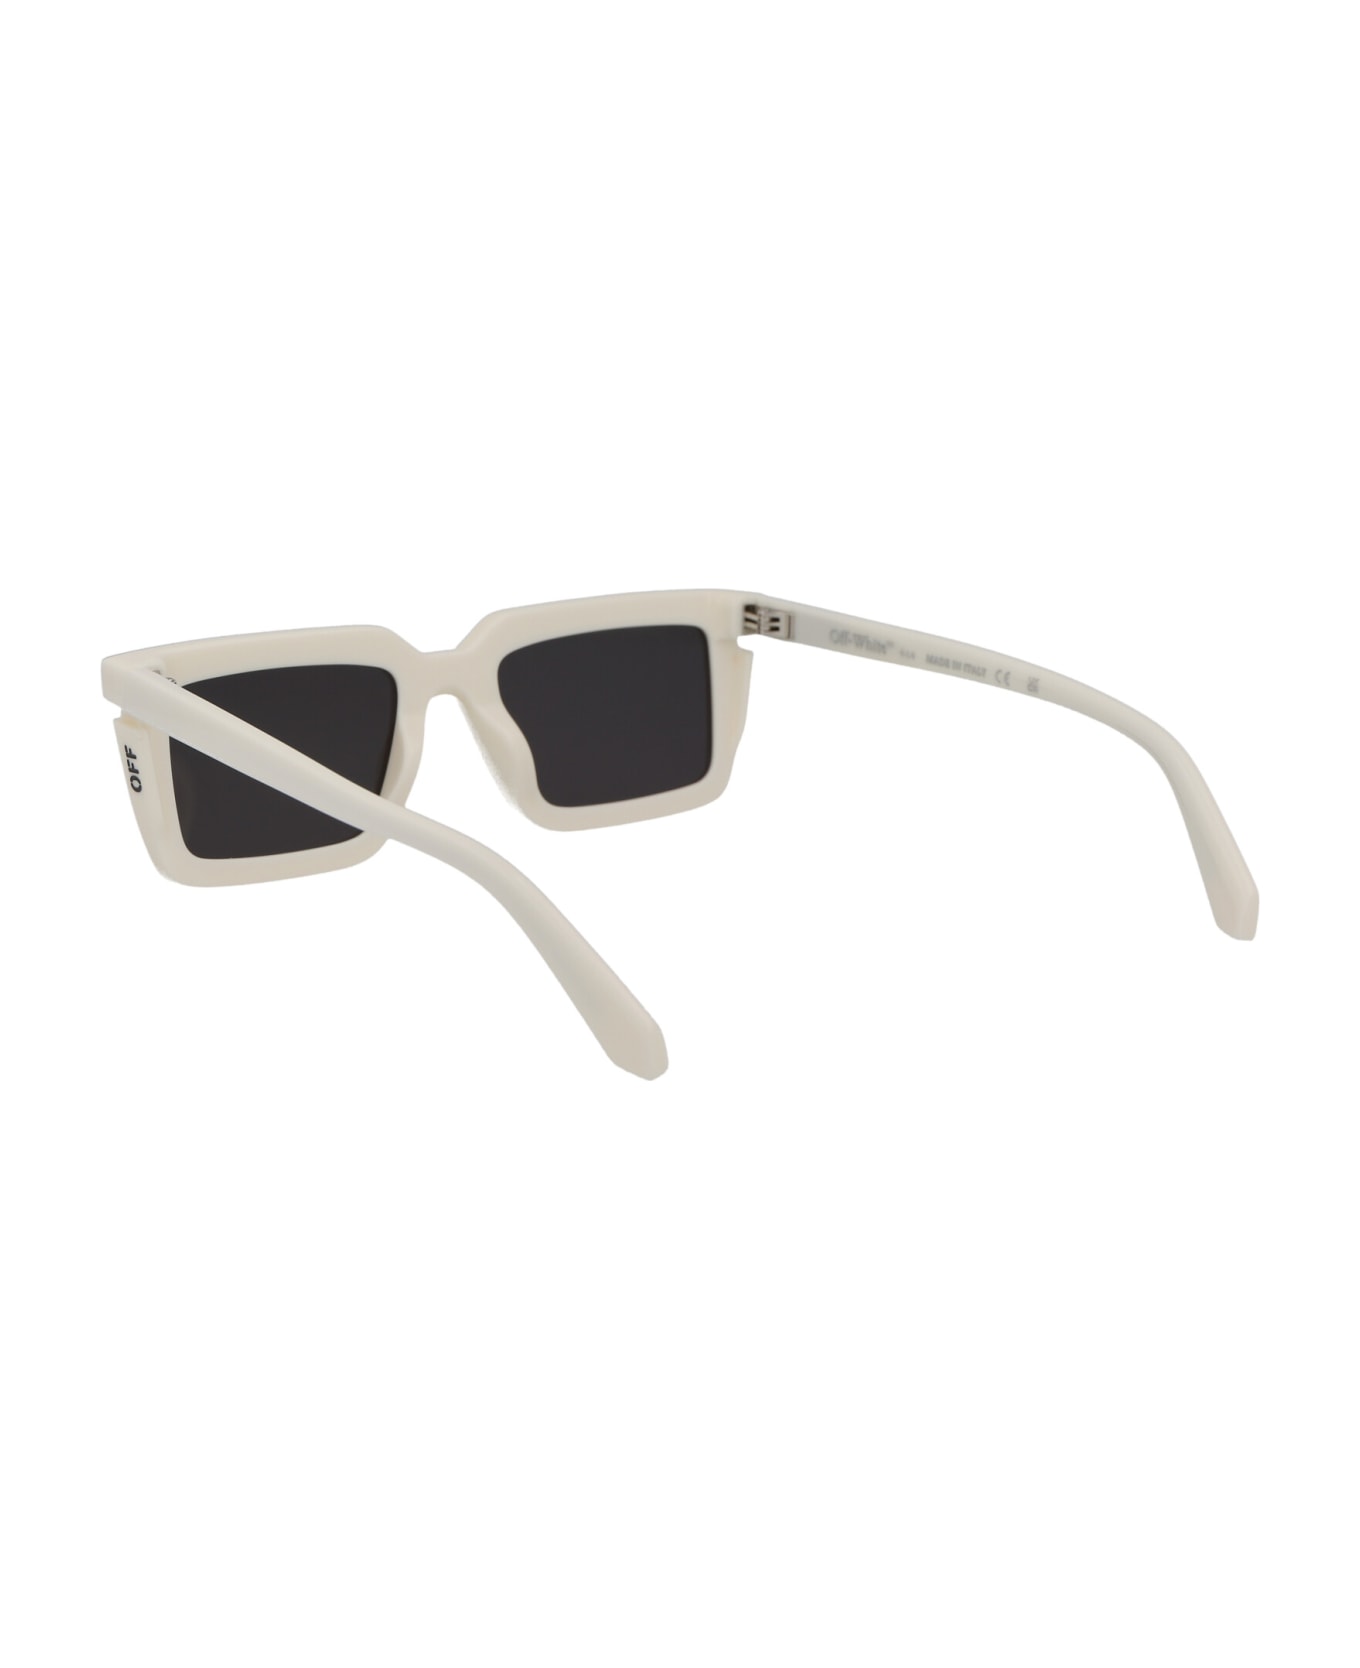 Off-White Tucson Sunglasses - 0107 WHITE